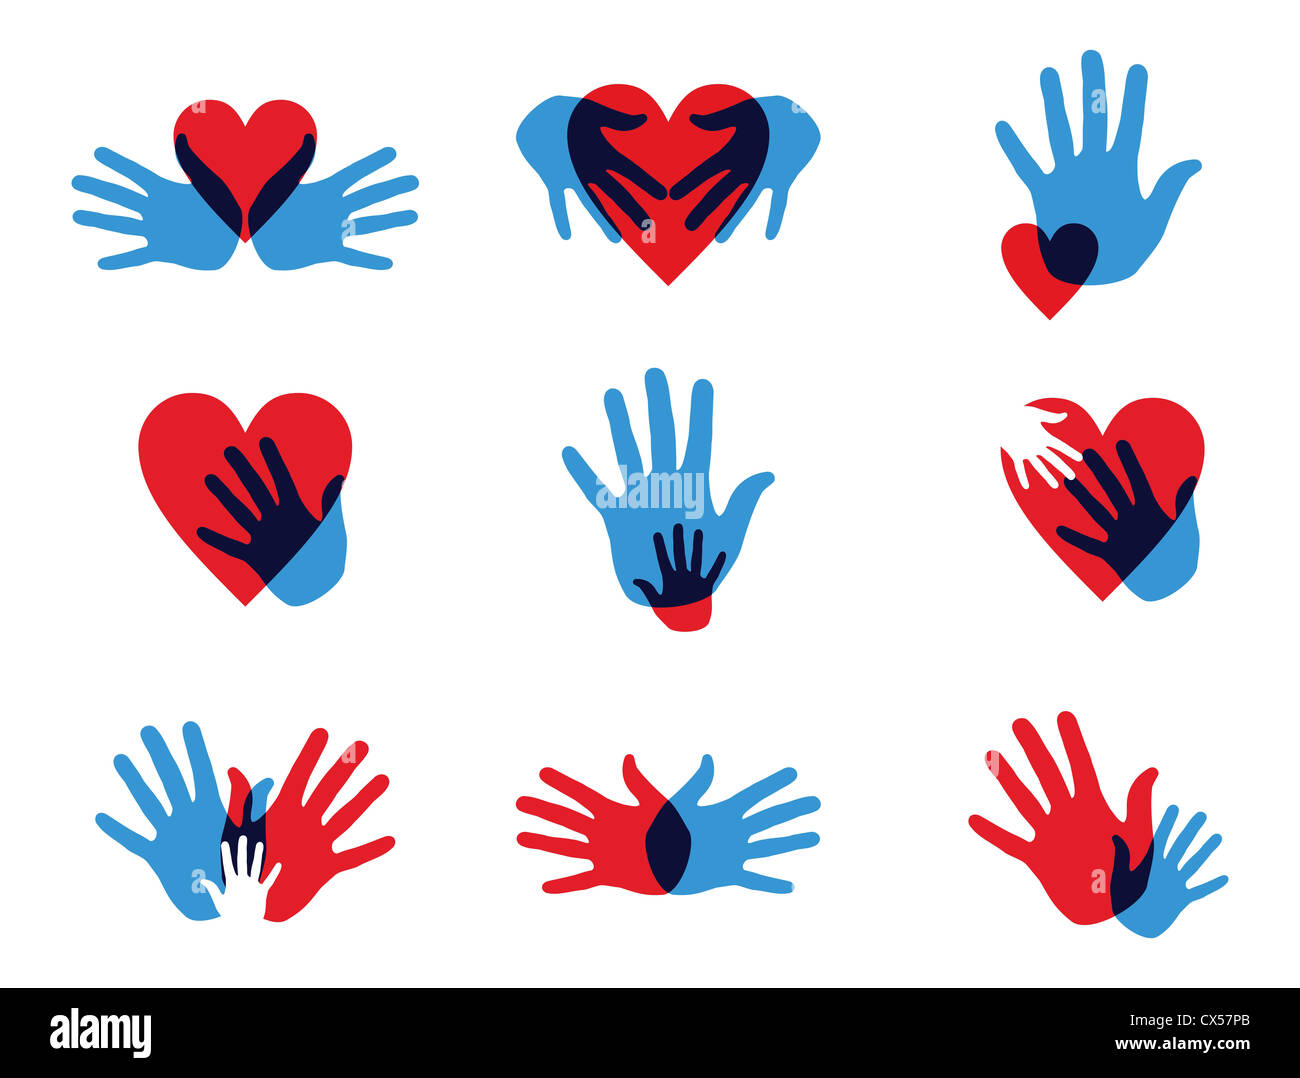 Multicolor diversité créative mains icon set. Couches d'illustration vectorielle pour une manipulation facile et coloris. Banque D'Images